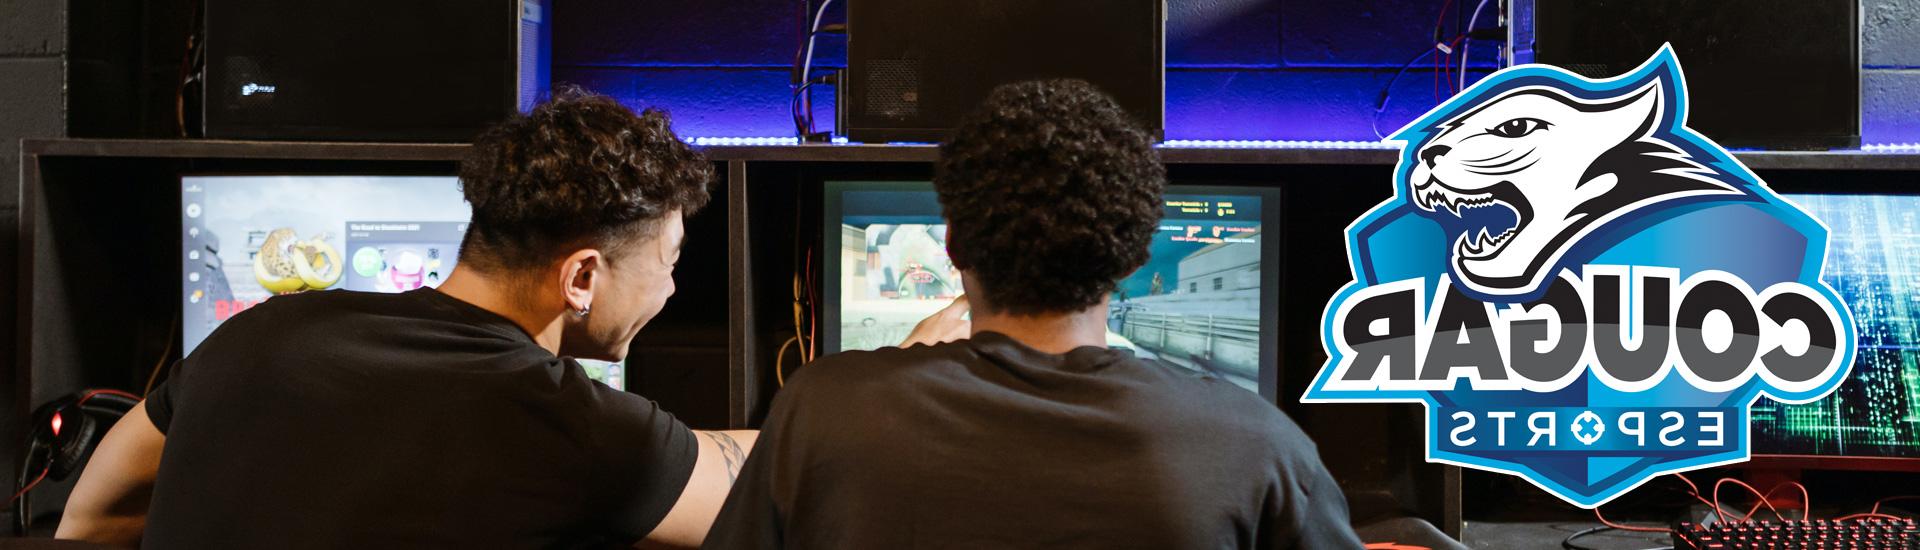 2 men playing video games